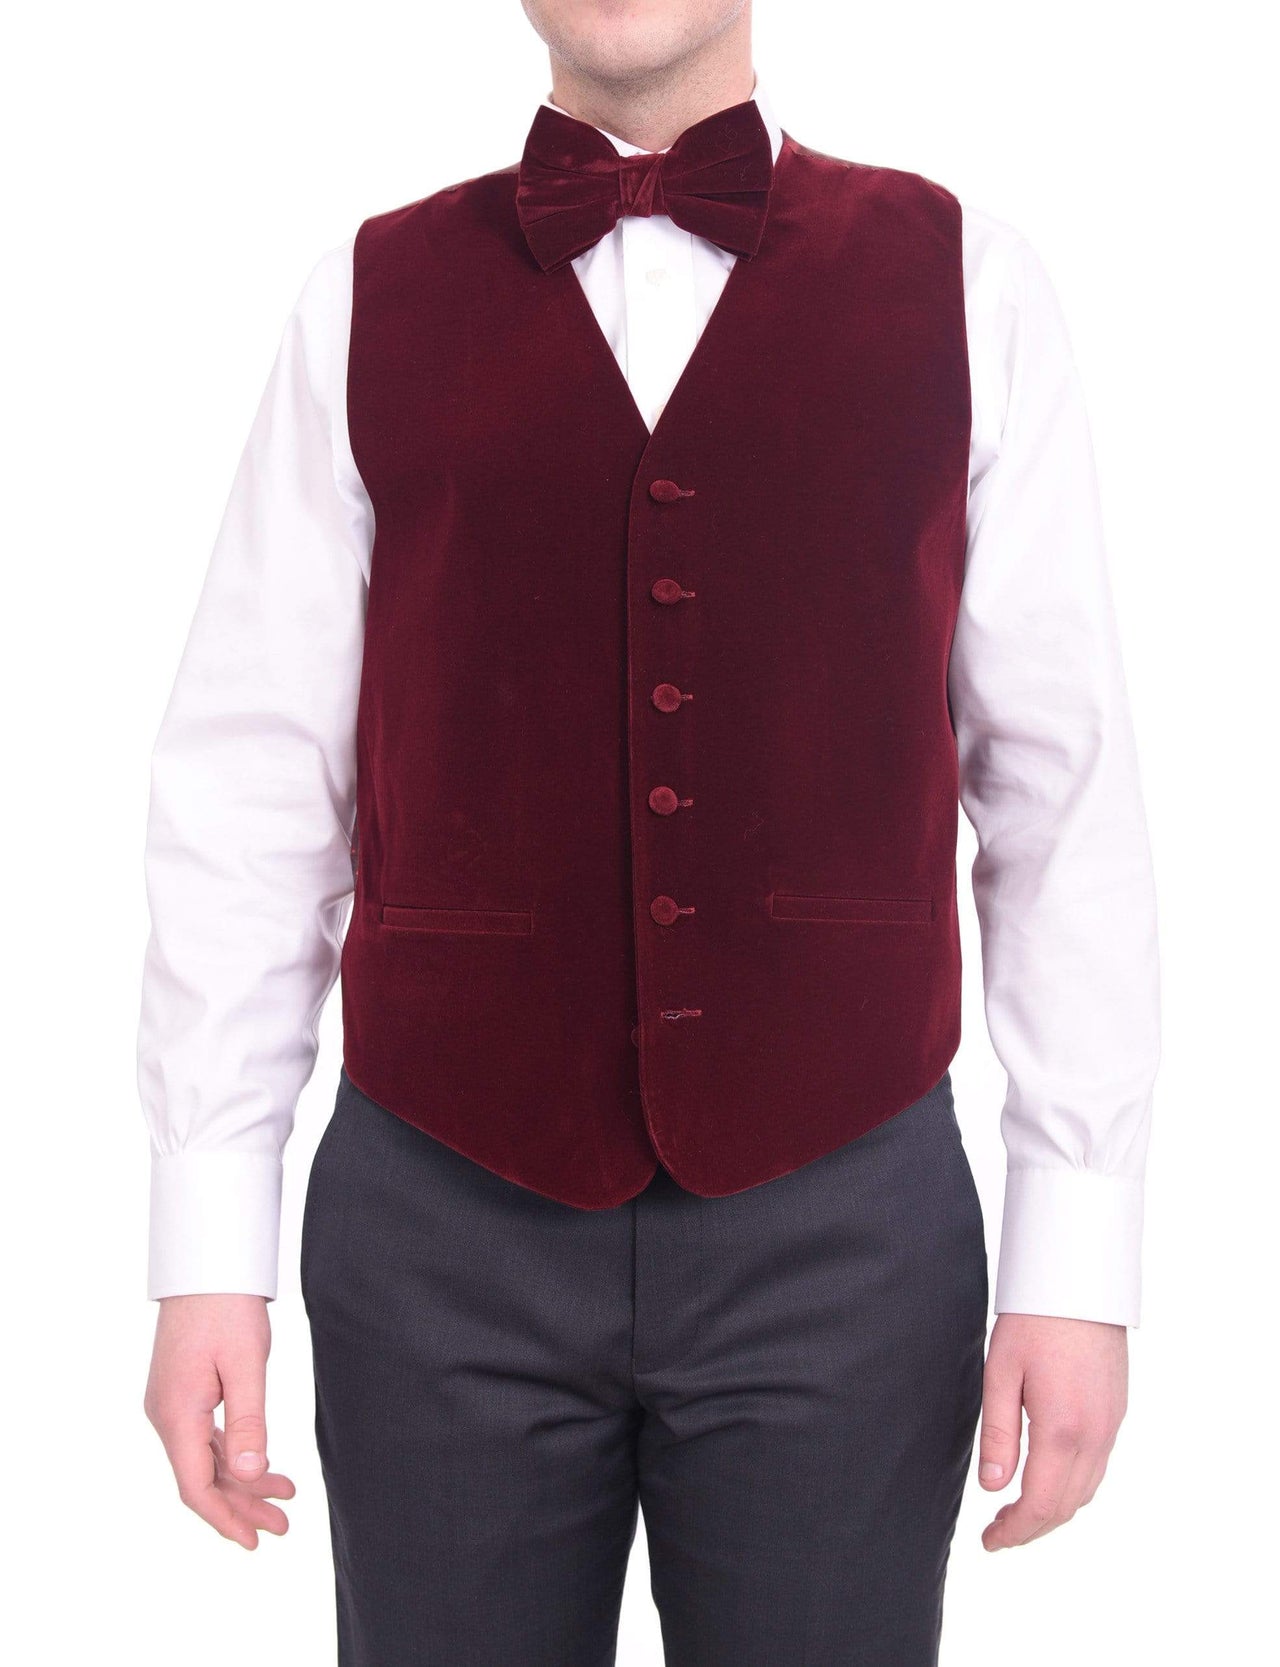 Steven Land Solid Burgundy Velvet Velour Vest With Necktie & Bowtie Set - The Suit Depot